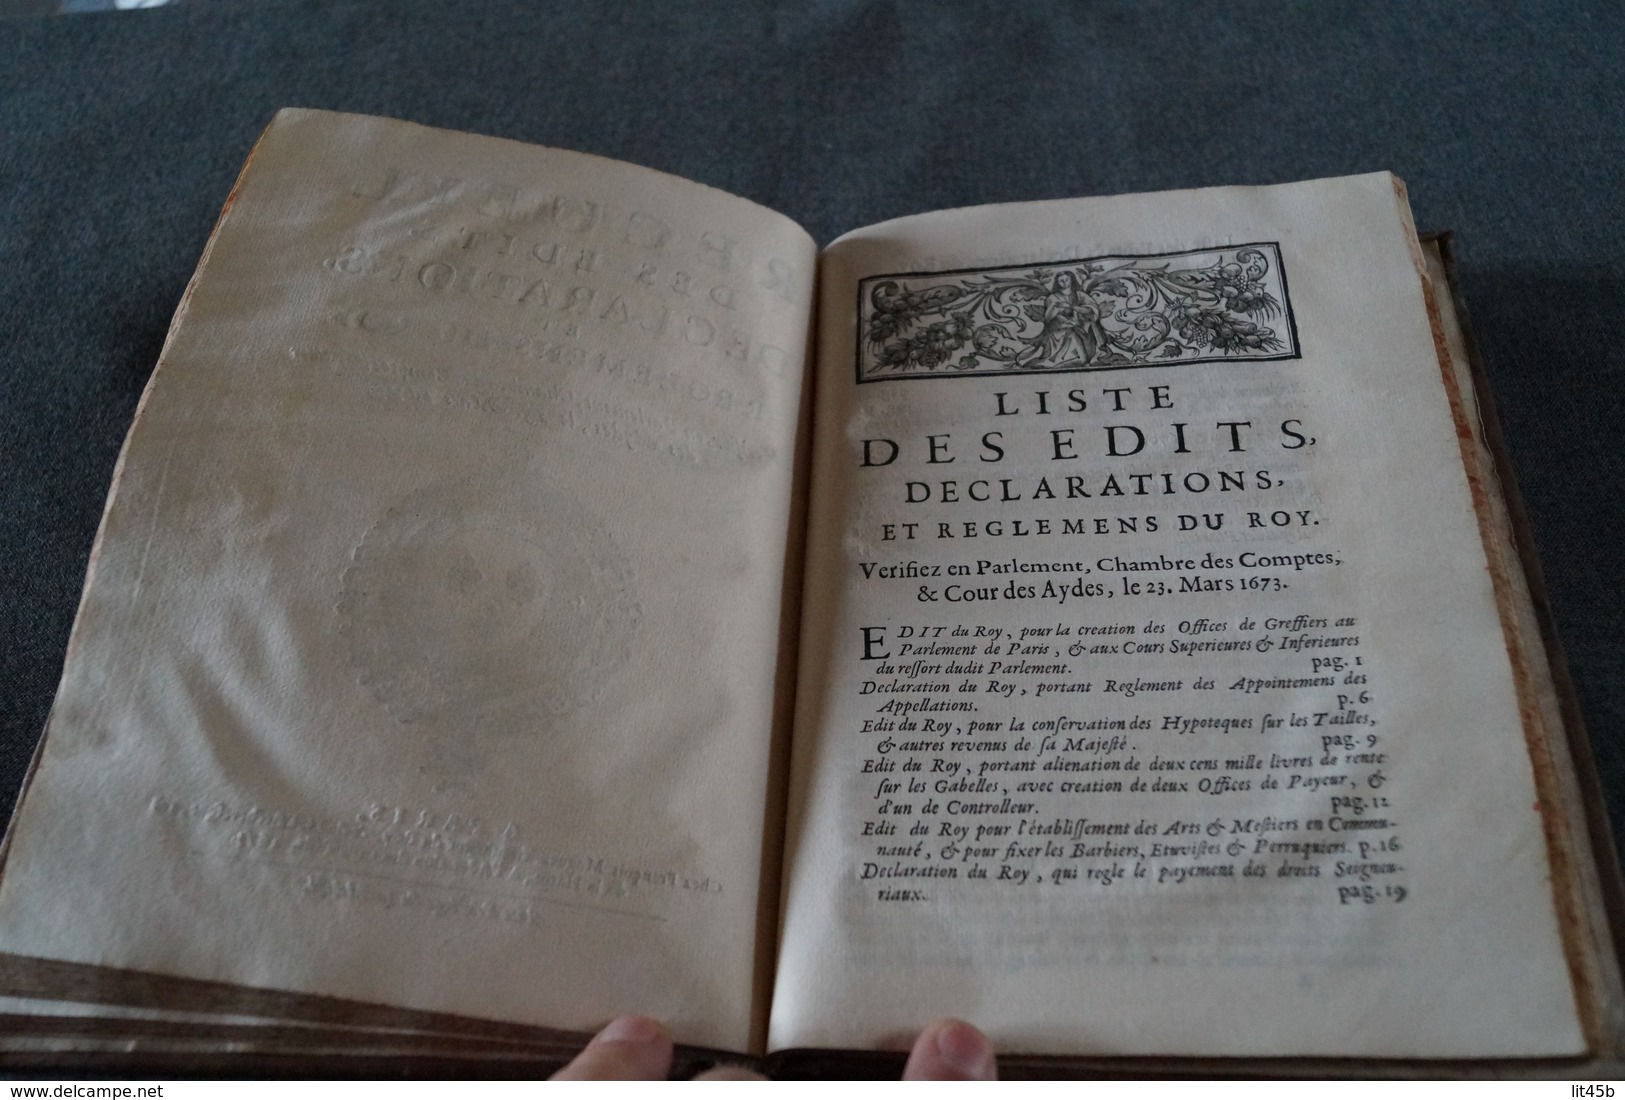 RARE ouvrage de 1673,Ordonnances de Louis XIV avec recueils des Edits du Roy ouvrage complet